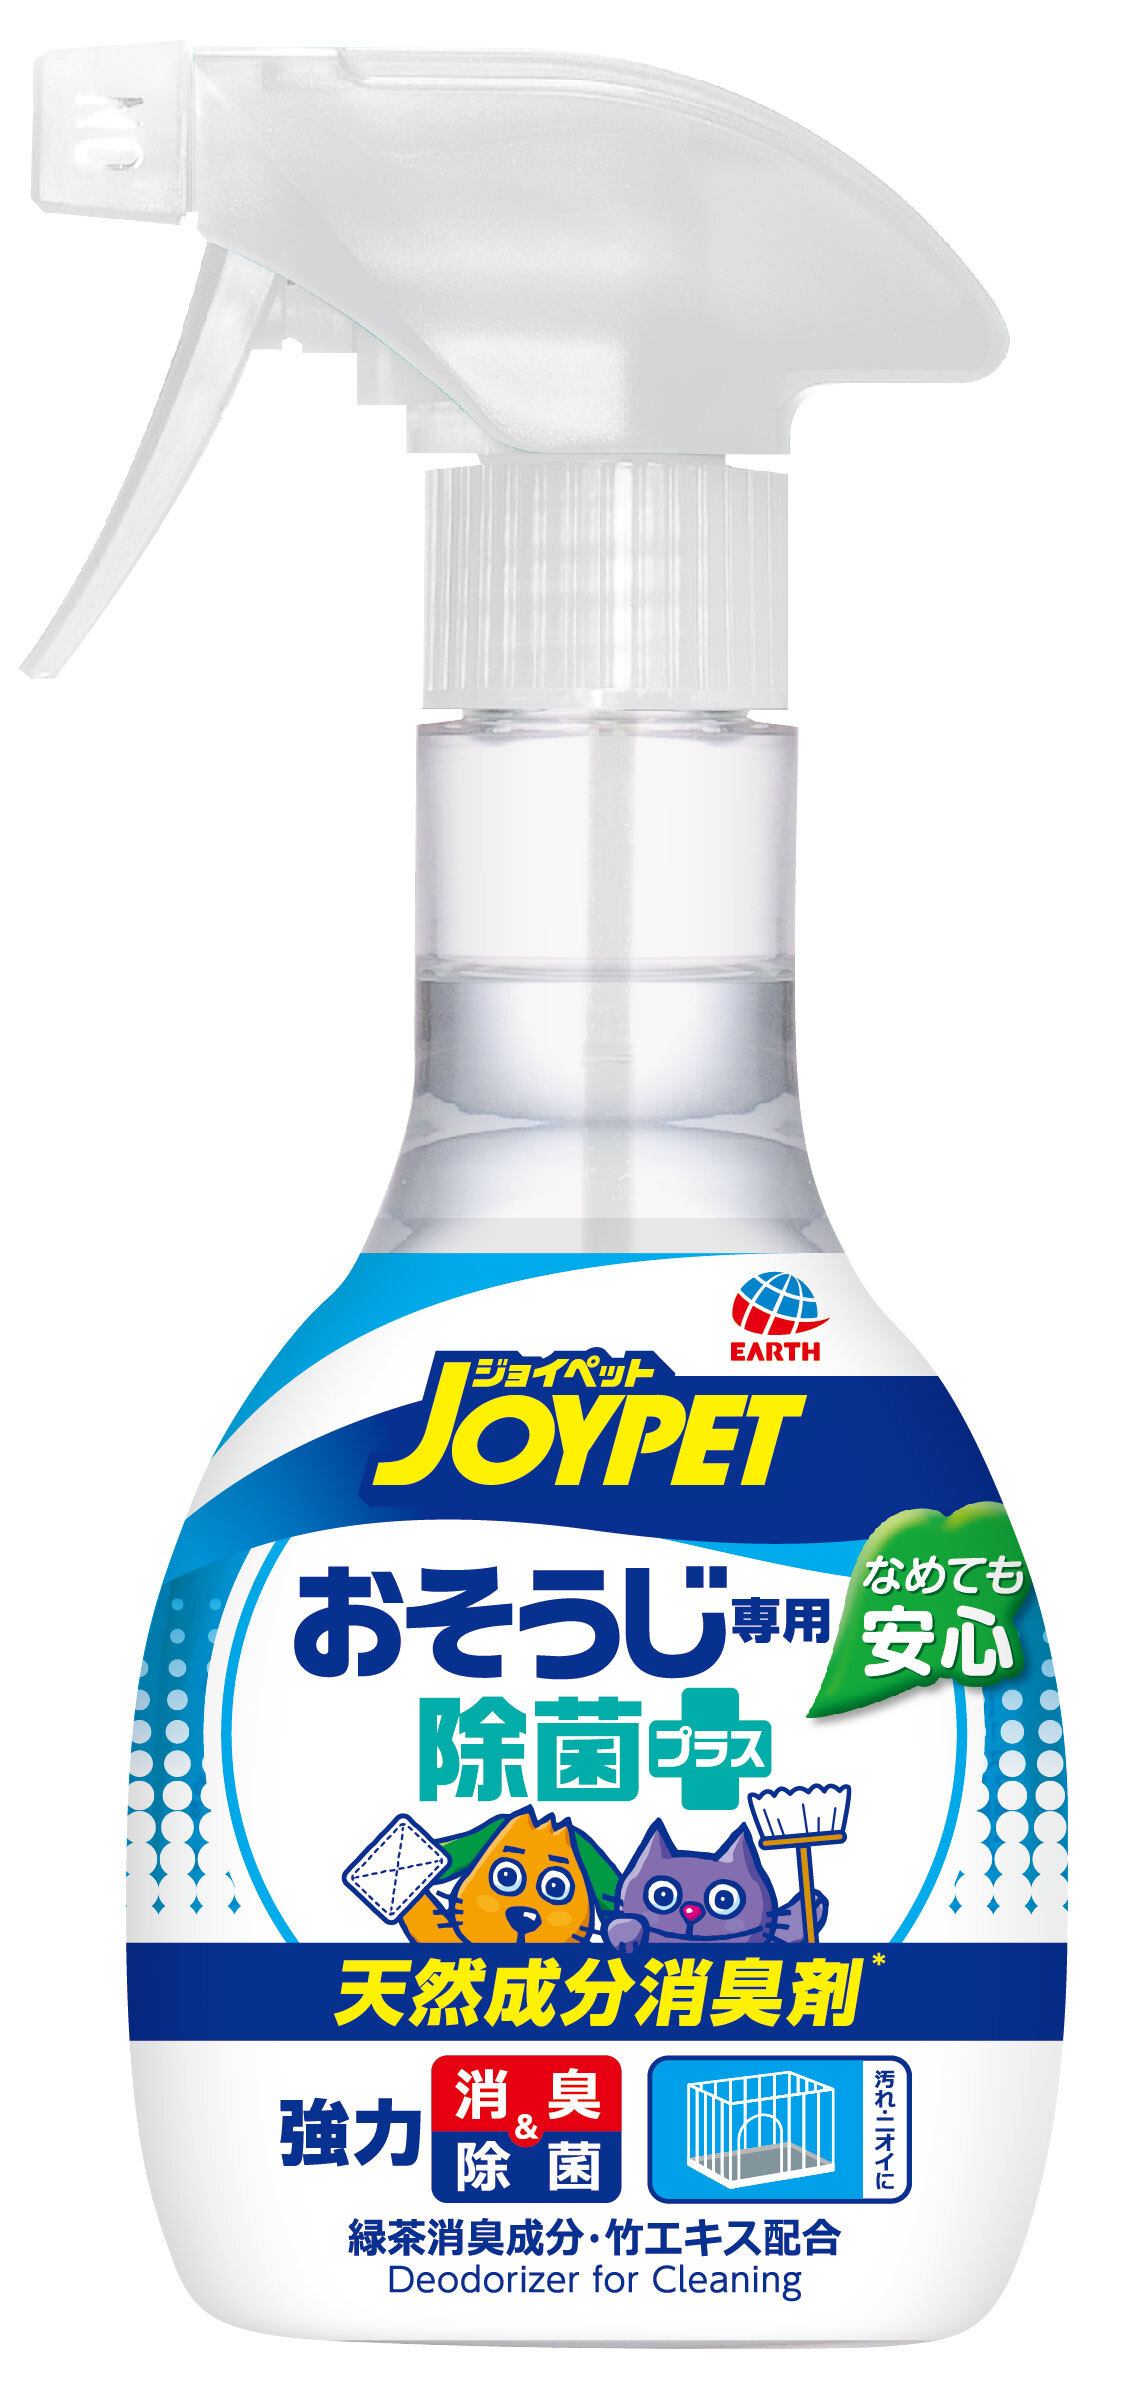 アース・ペット:JOYPET 天然成分消臭剤 オシッコのニオイ・汚れ専用